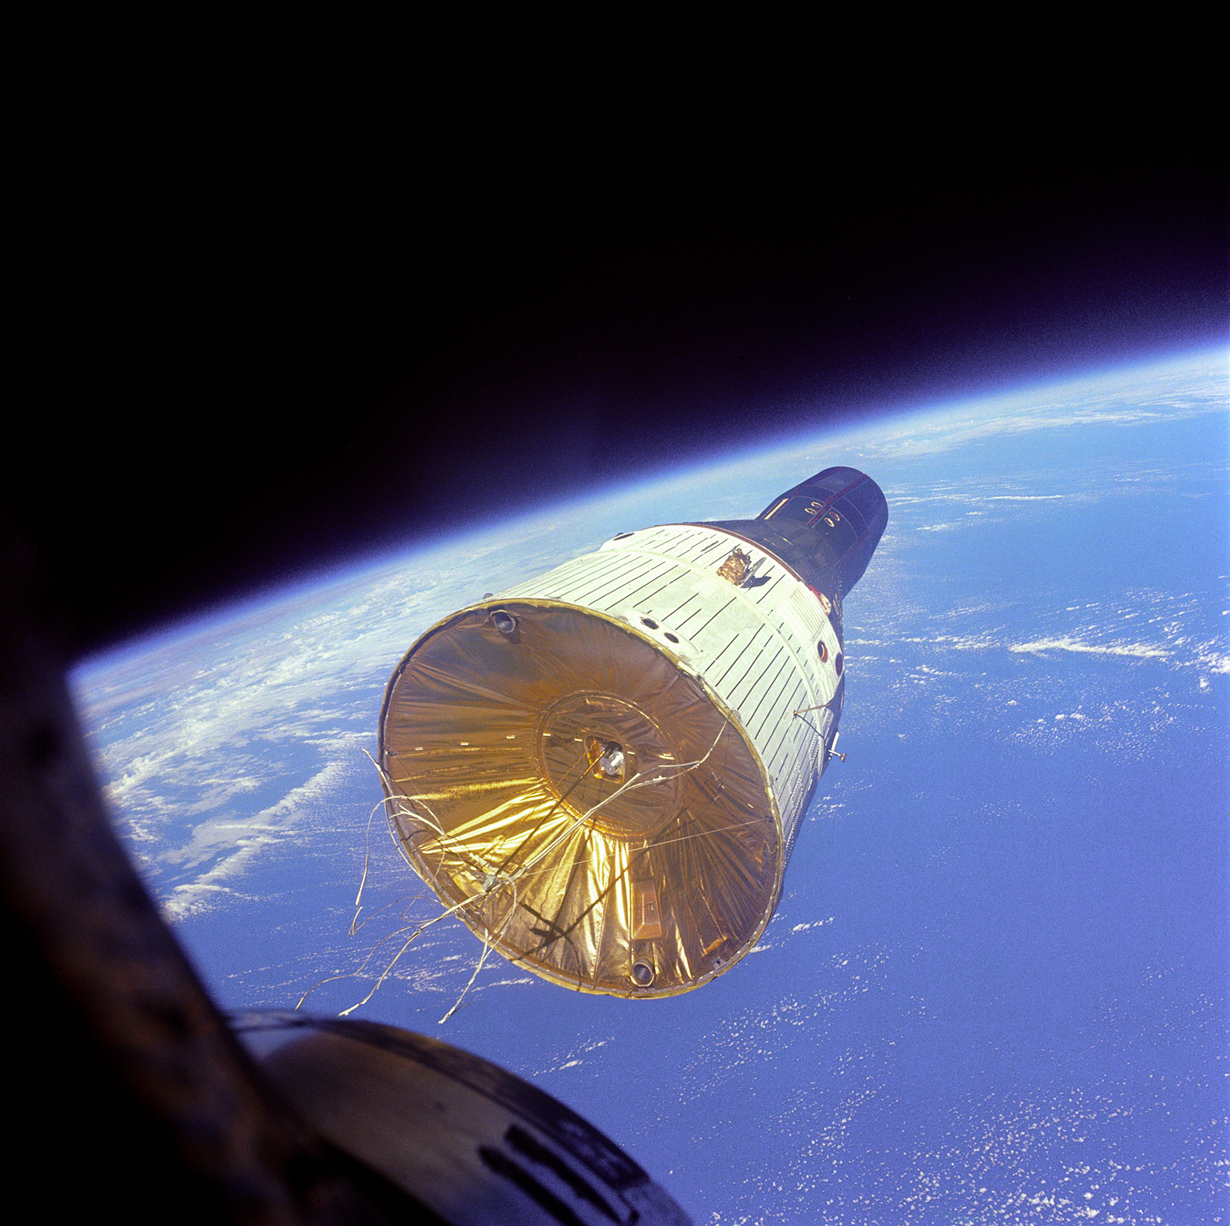 Вид на американский пилотируемый космический корабль «Джемини-7» с иллюминатора американского пилотируемого космического корабля «Джемини-6A». В момент сьёмки расстояние между объектами составляло 7 метров. На снимке «Джемини-7» находится на высоте 257 км над поверхностью Земли. (NASA on The Commons)